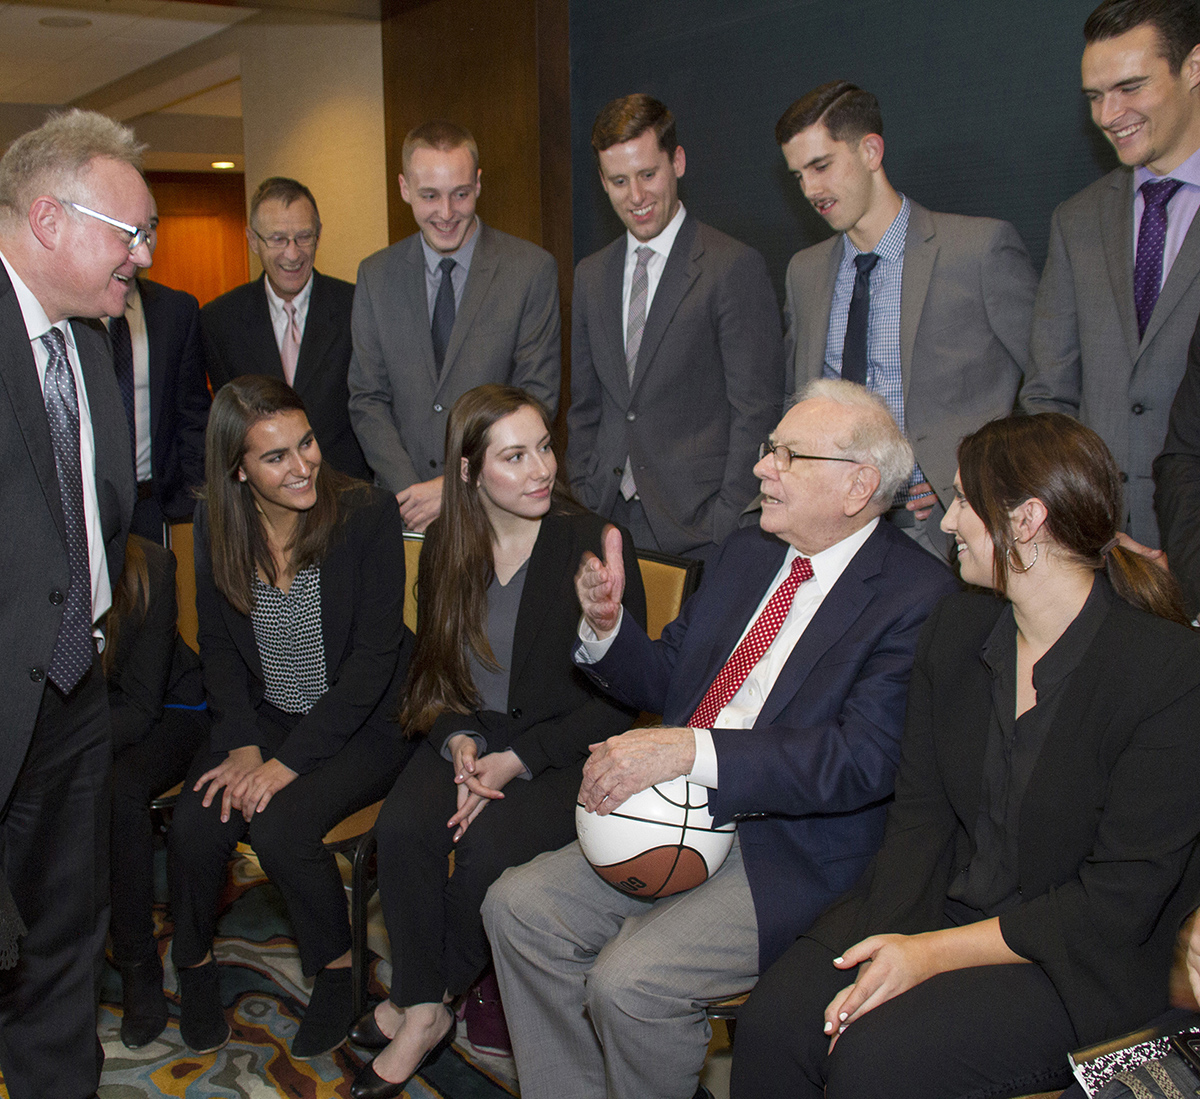 Business Students Reflect on Meeting Warren Buffett 